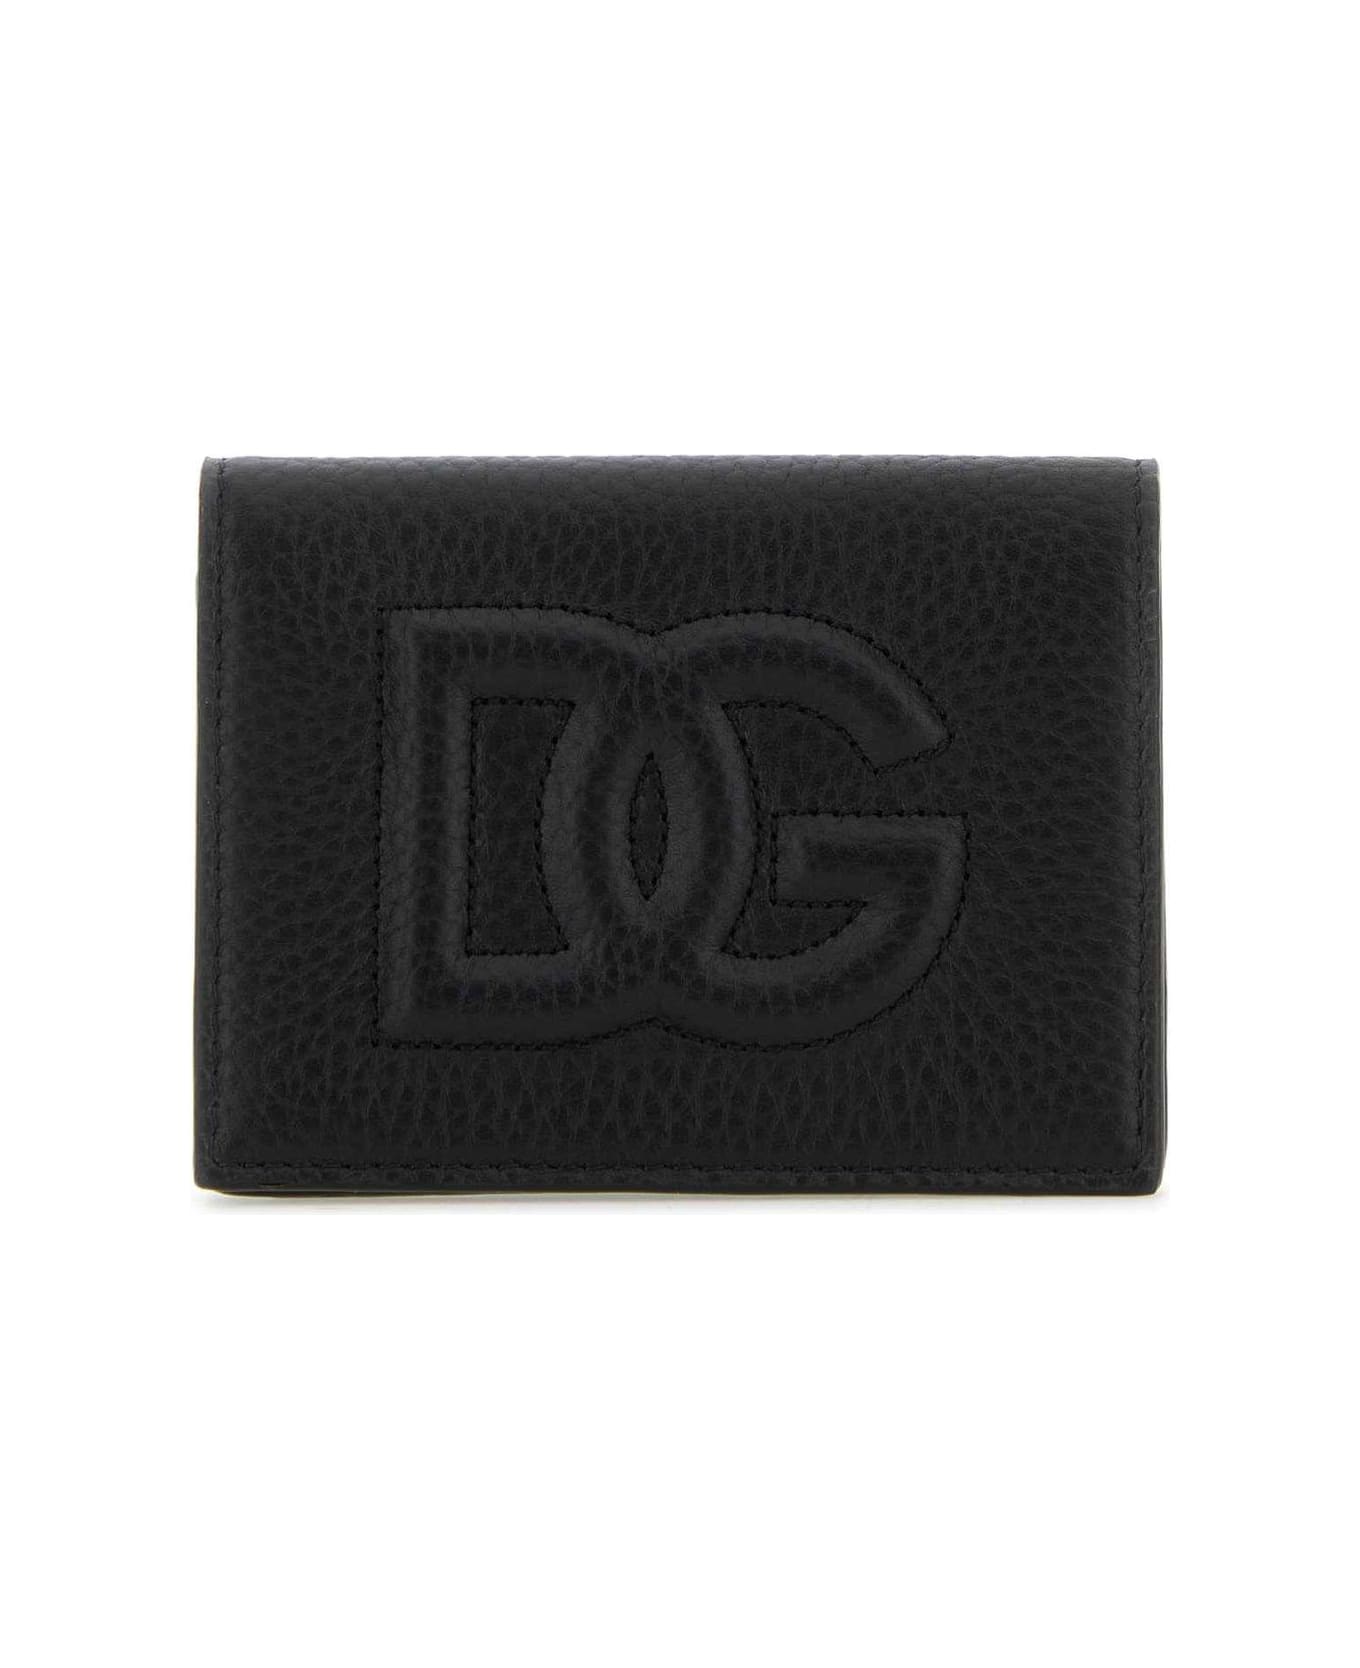 Dolce & Gabbana Wallet - NERO